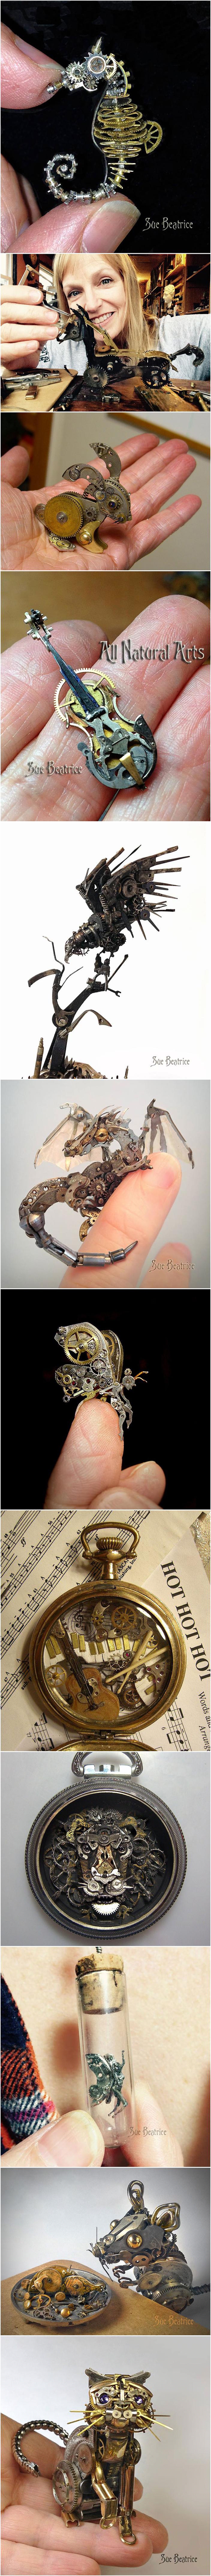 Susan Beatrice recycle des mécanismes de montre et d'autres pièces pour les assembler et créer ces animaux miniatures.
Pour le dernier, je crois qu'il s'agit plutôt d'un prototype créé par les chats après avoir vu Terminator.

https://www.facebook.com/allnaturalarts/